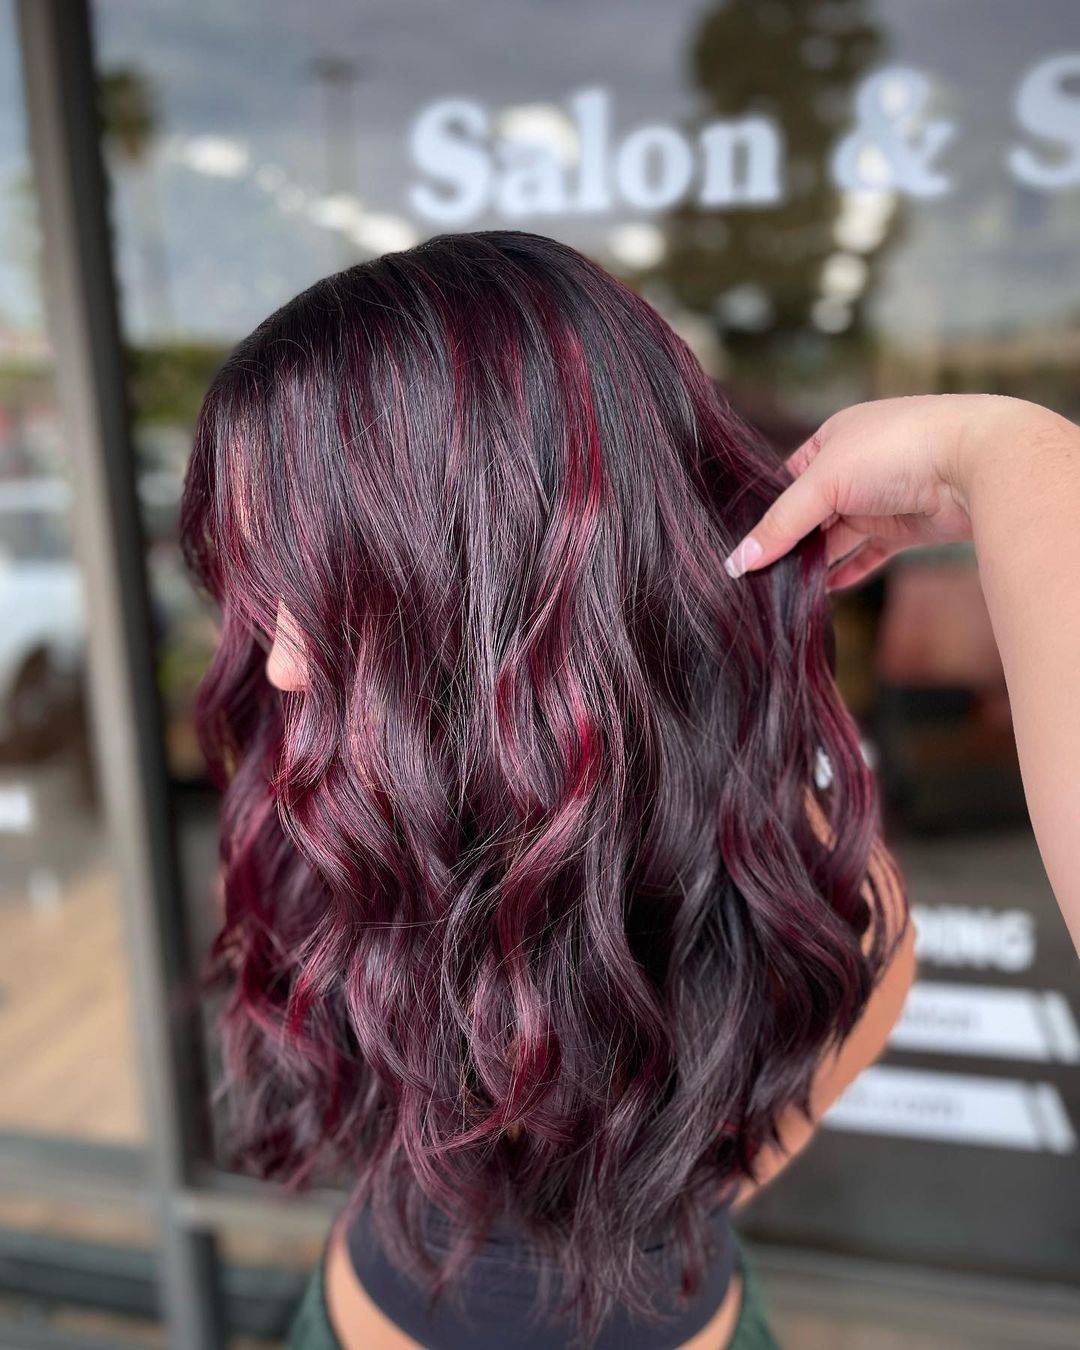 Burgundy hair color 352 burgundy hair color | burgundy hair color for women | burgundy hair color highlights Burgundy Hair Color